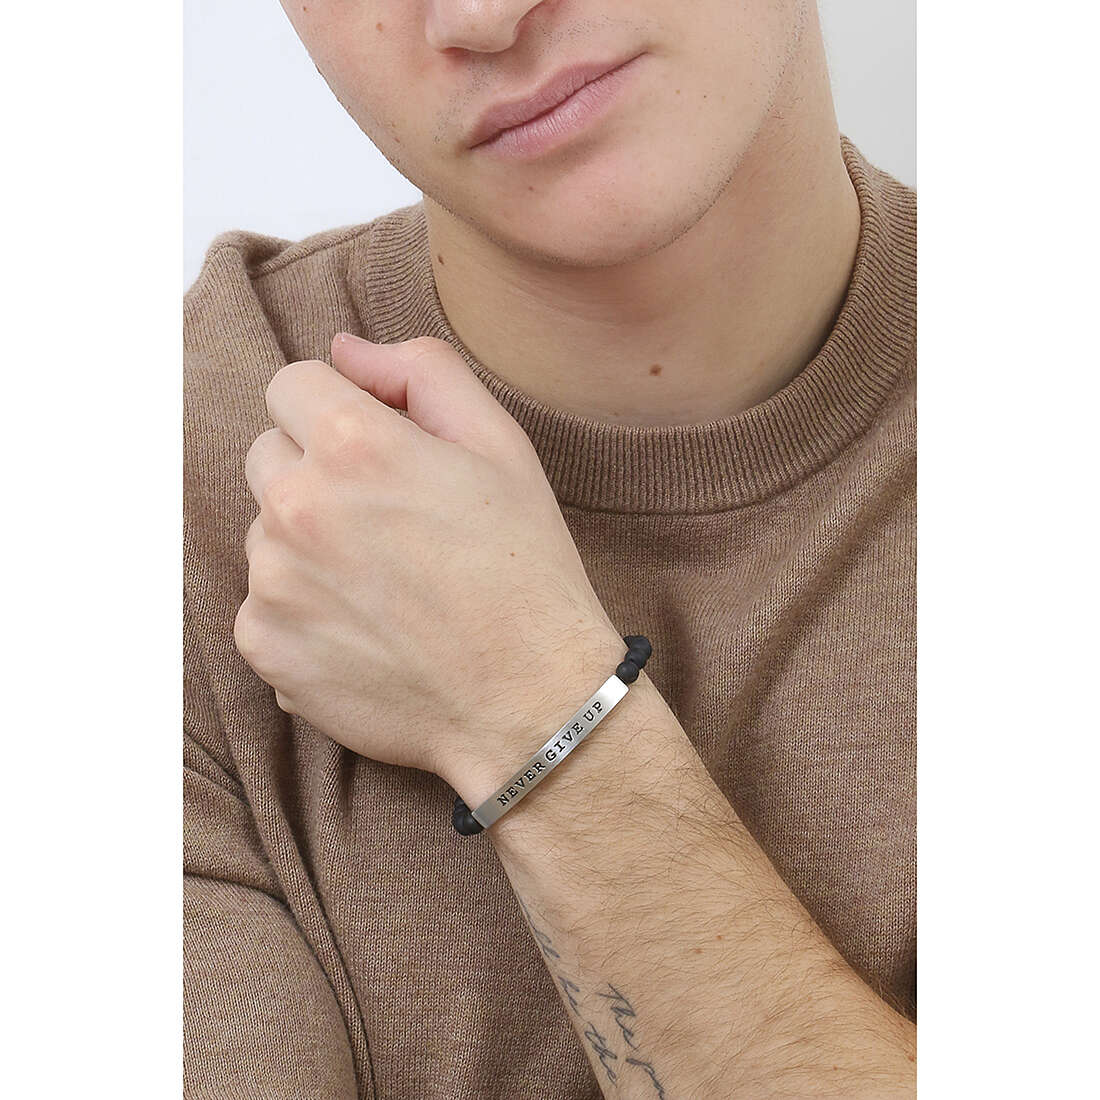 Kidult bracelets Philosophy man 731210 wearing